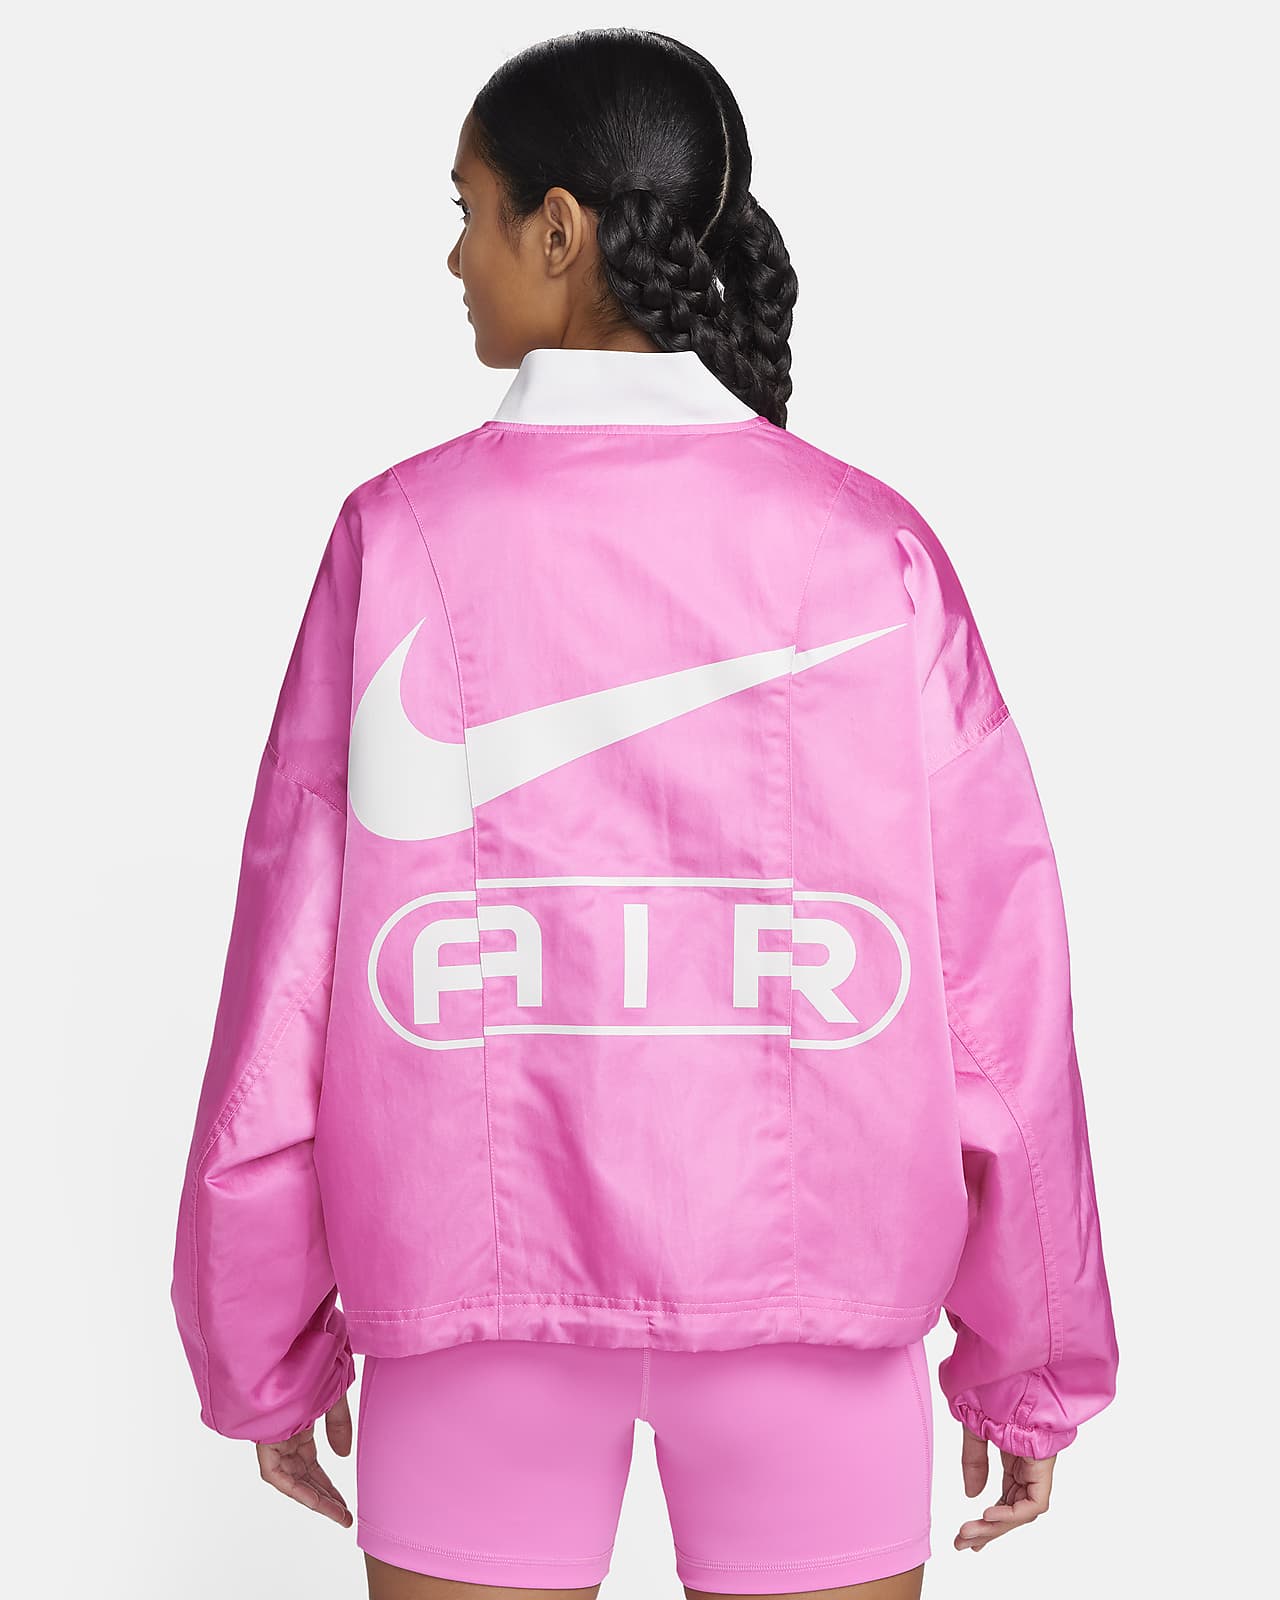 Nike Air Women's Oversized Woven Bomber Jacket.